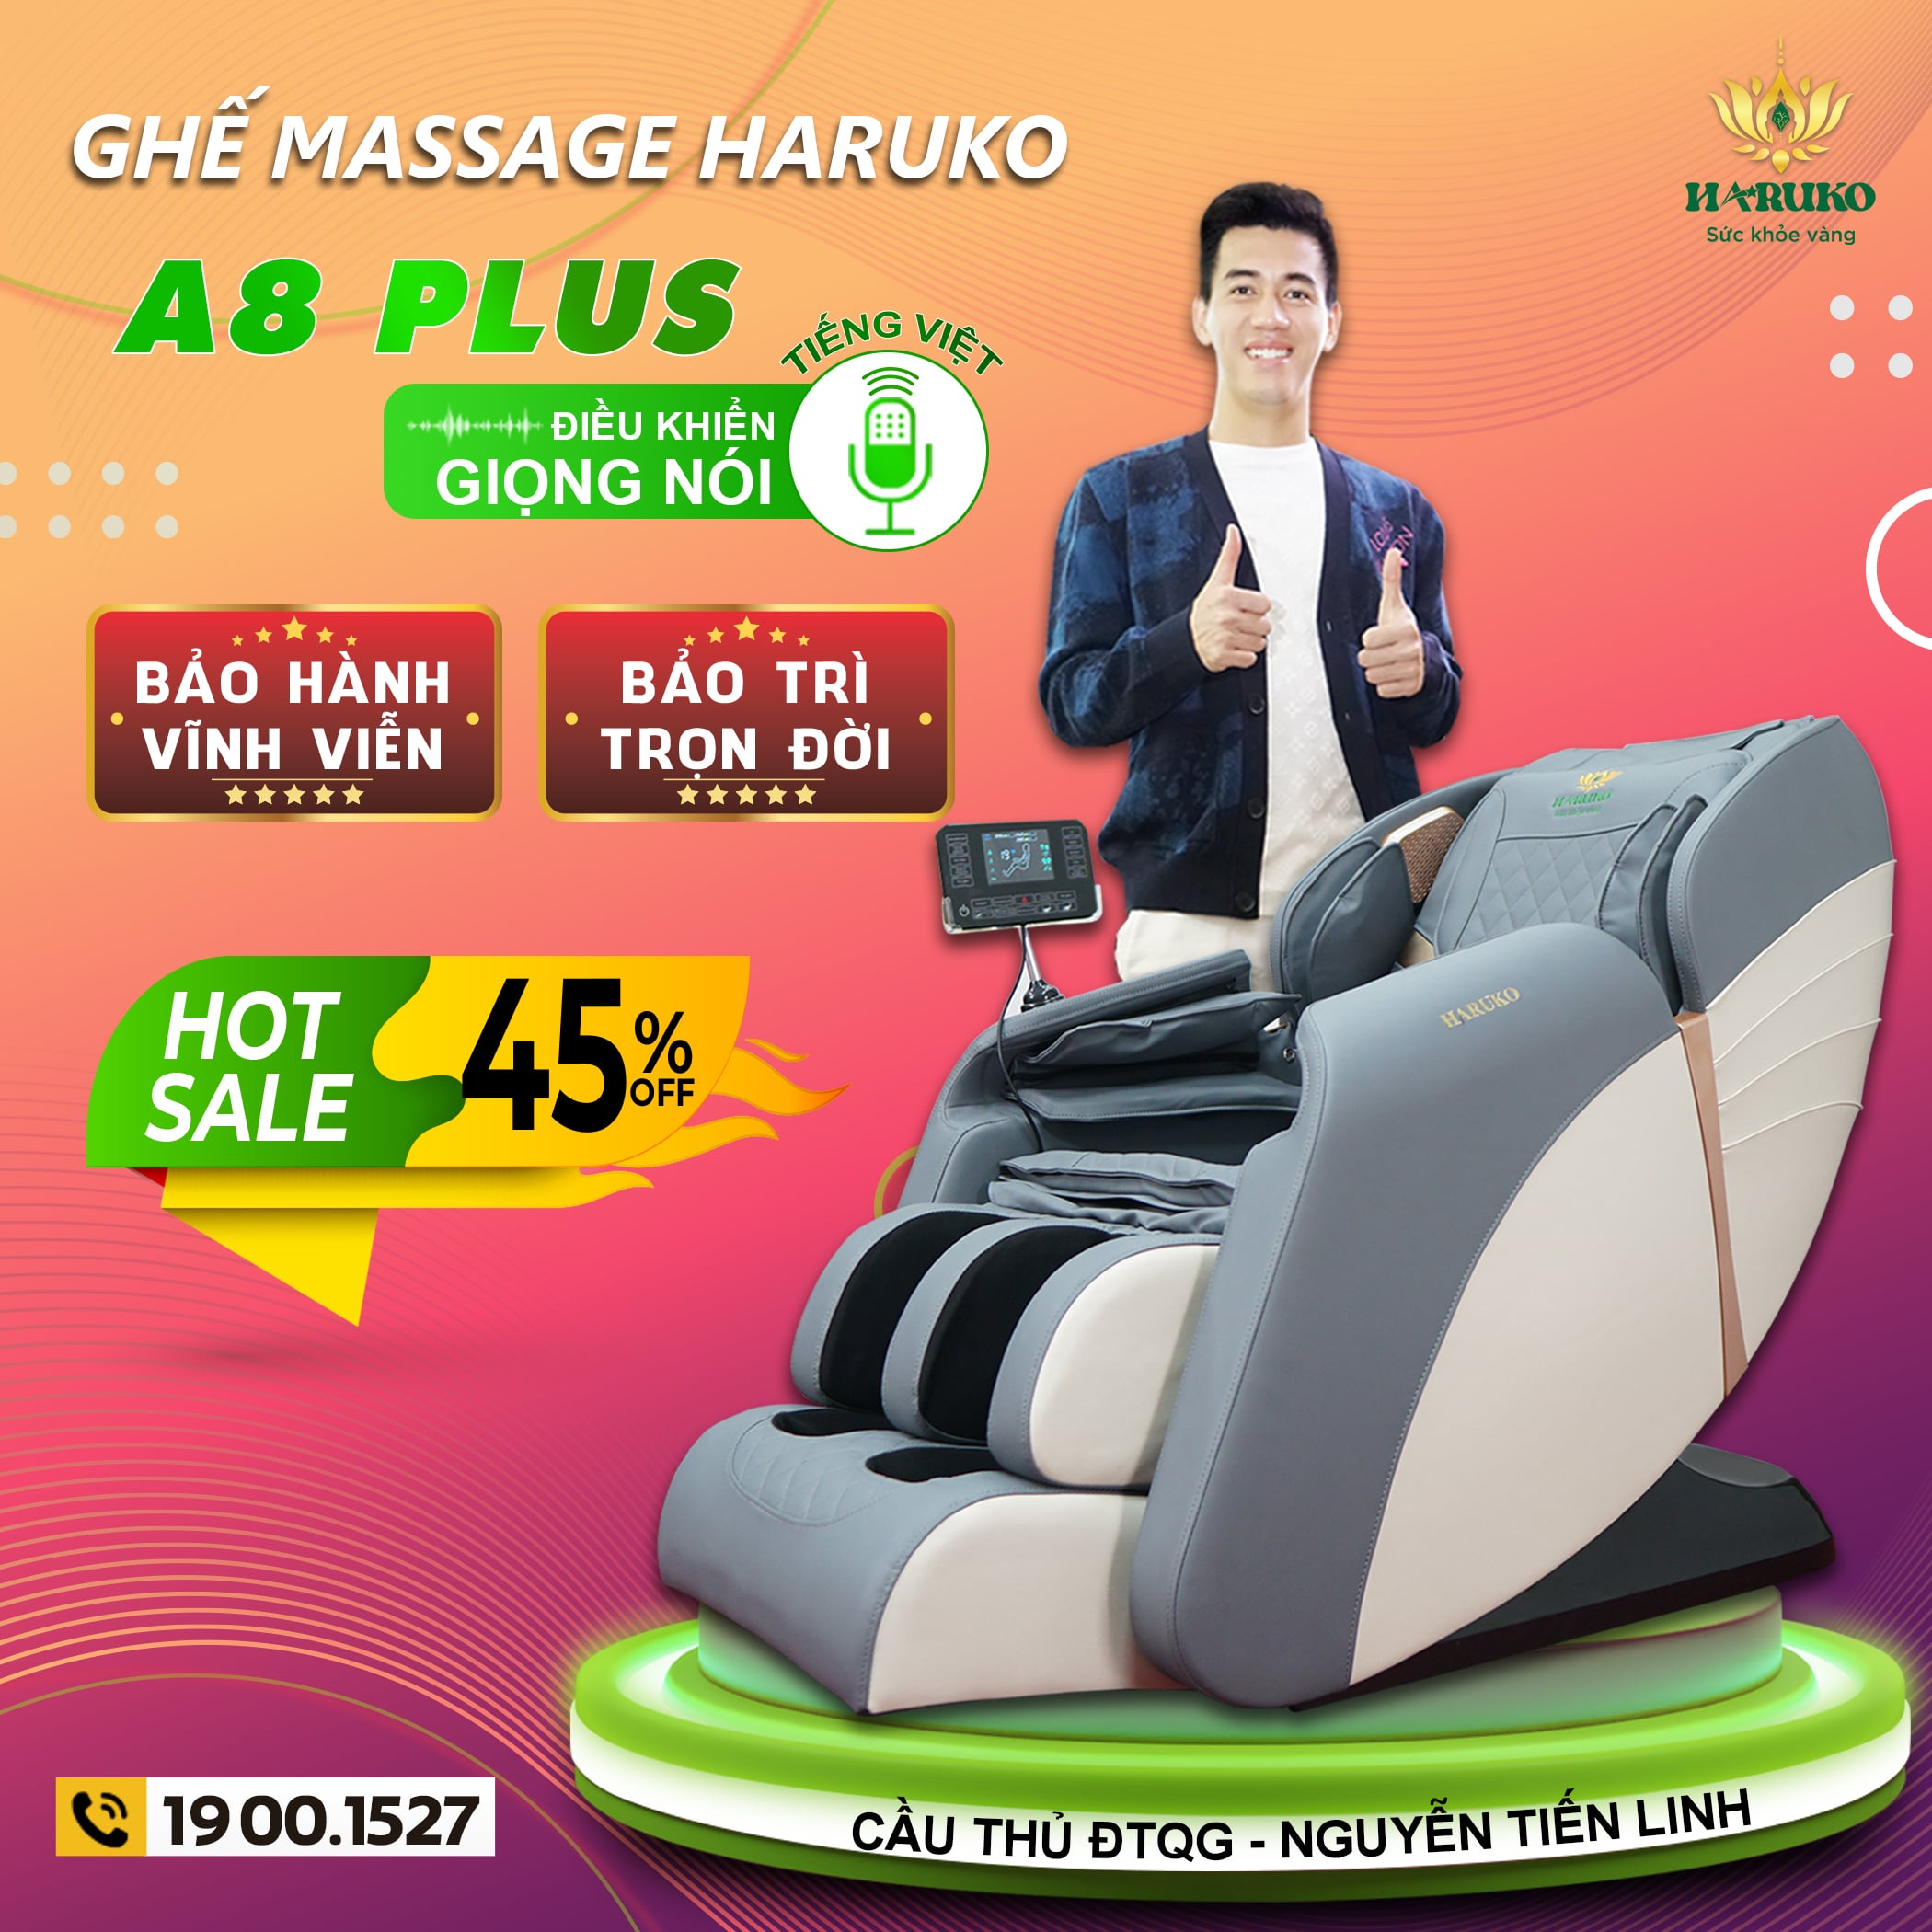 Akina Sport chuyên cung cấp những mẫu ghế massage cao cấp với nhiều tính năng ưu việt,vượt trội